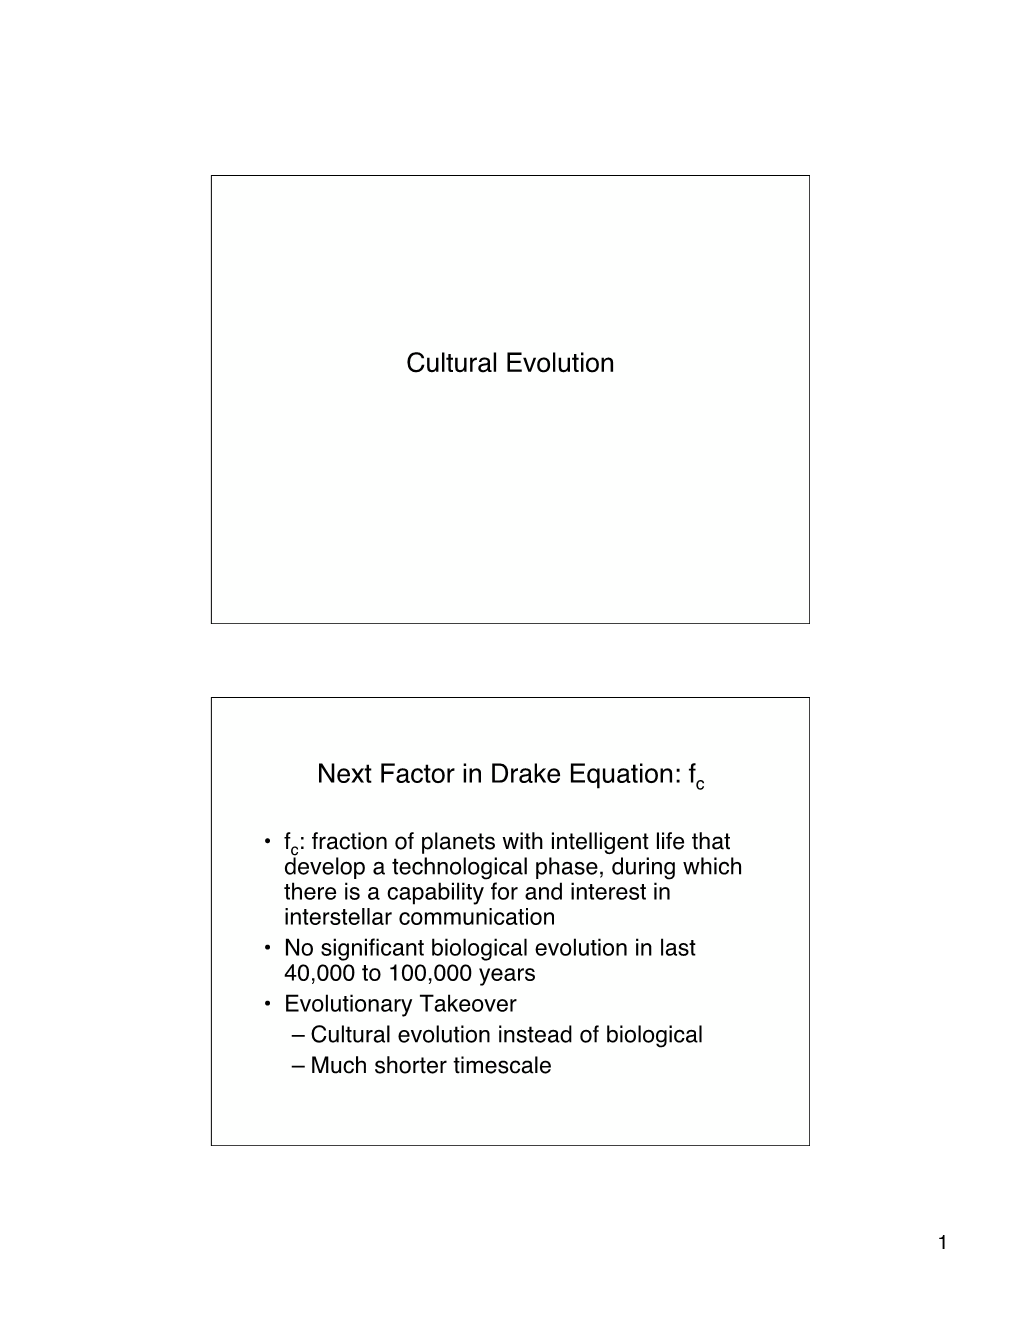 Cultural Evolution Next Factor in Drake Equation: F